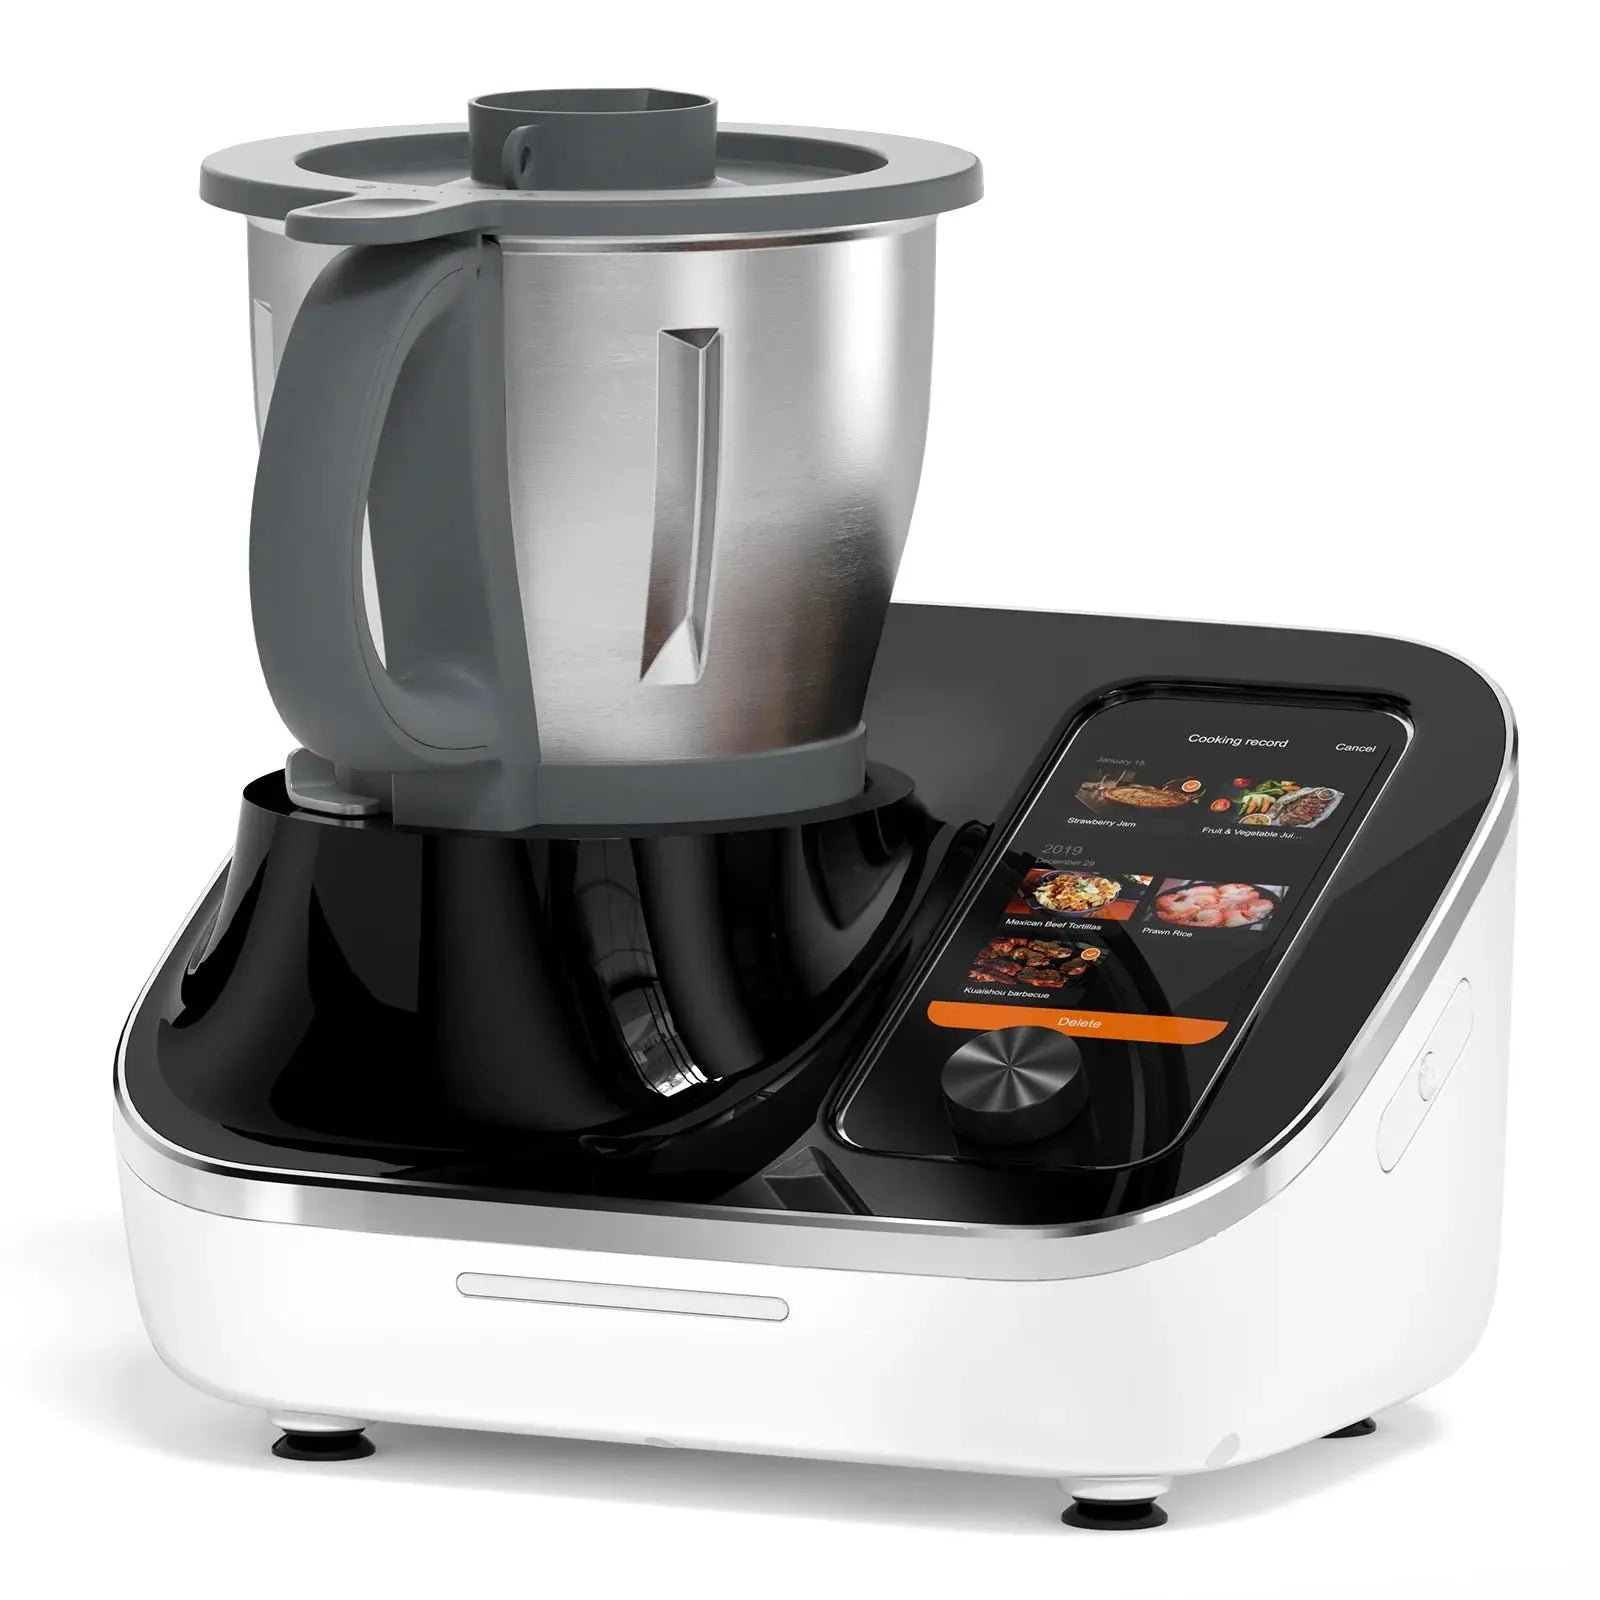 TOKIT Omni Cook Basic Bundle multi-functional kitchen appliance0